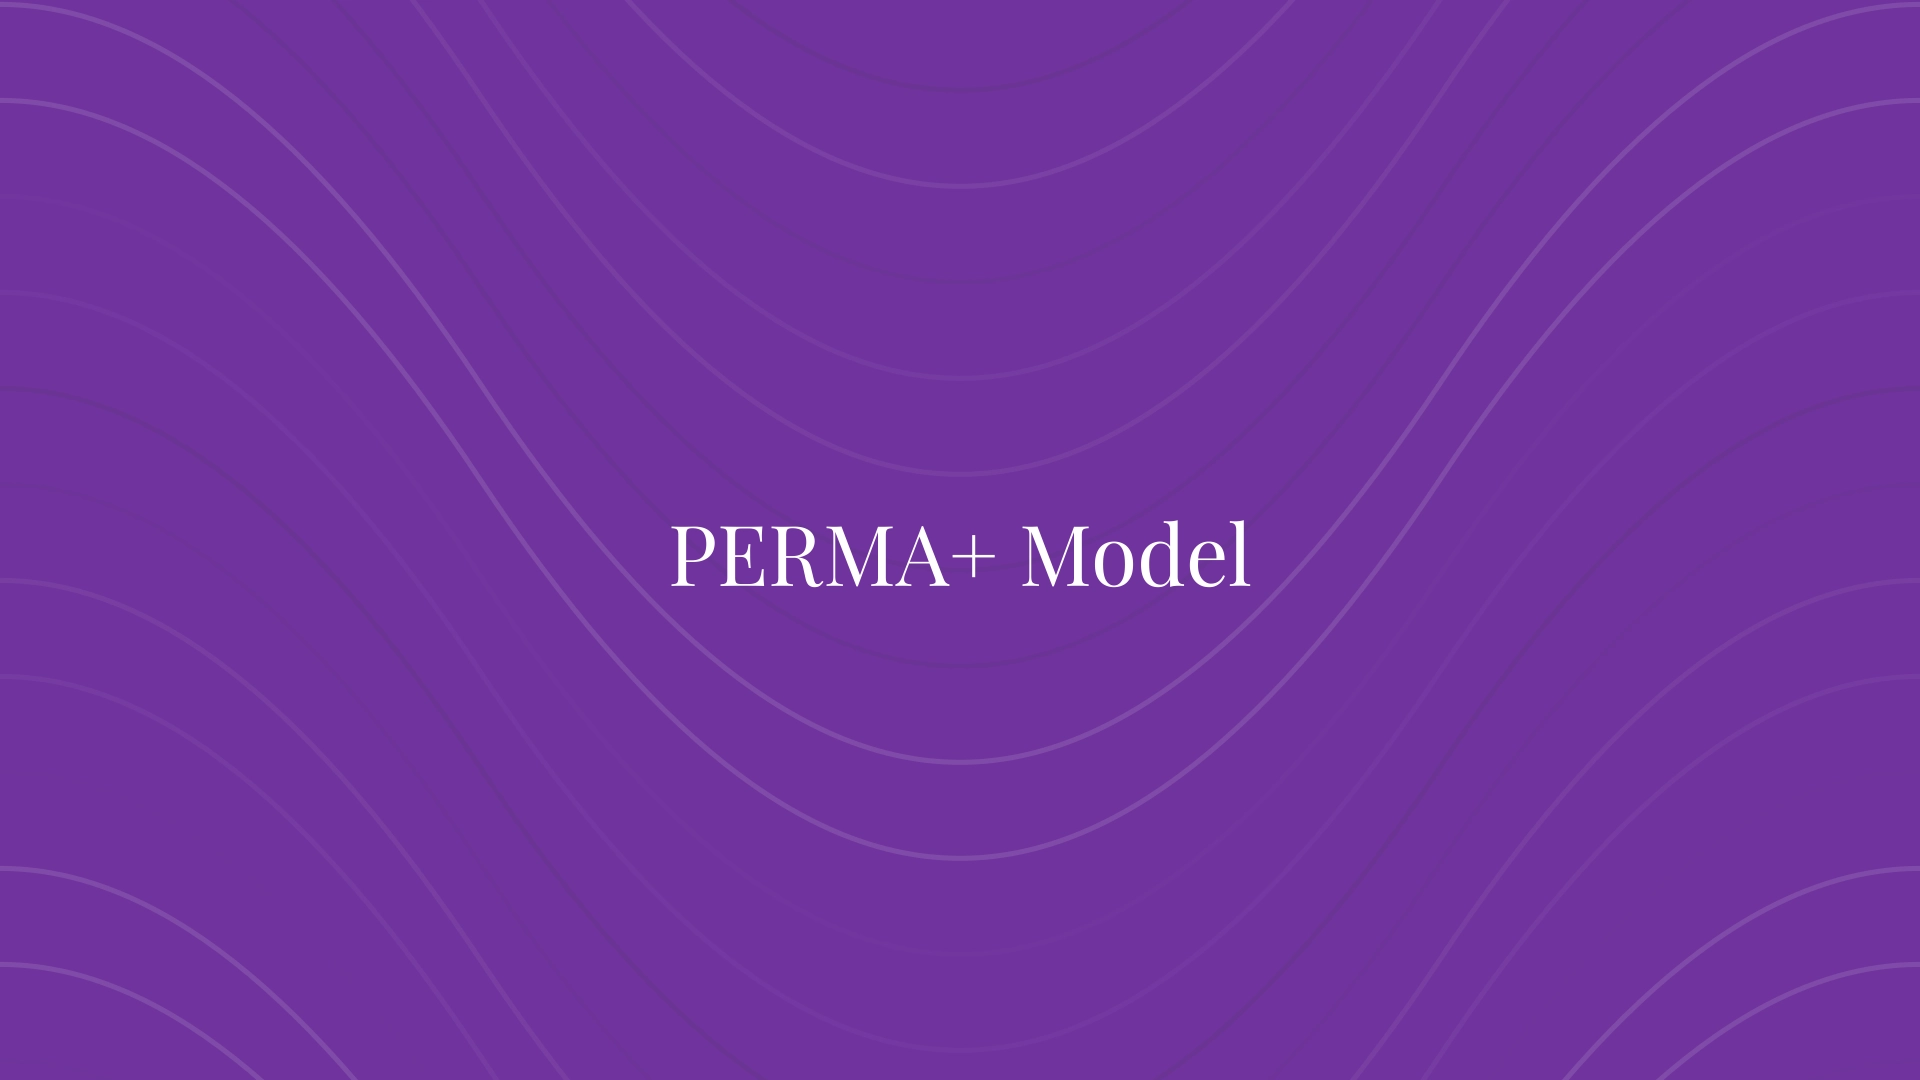 PERMA+ Model